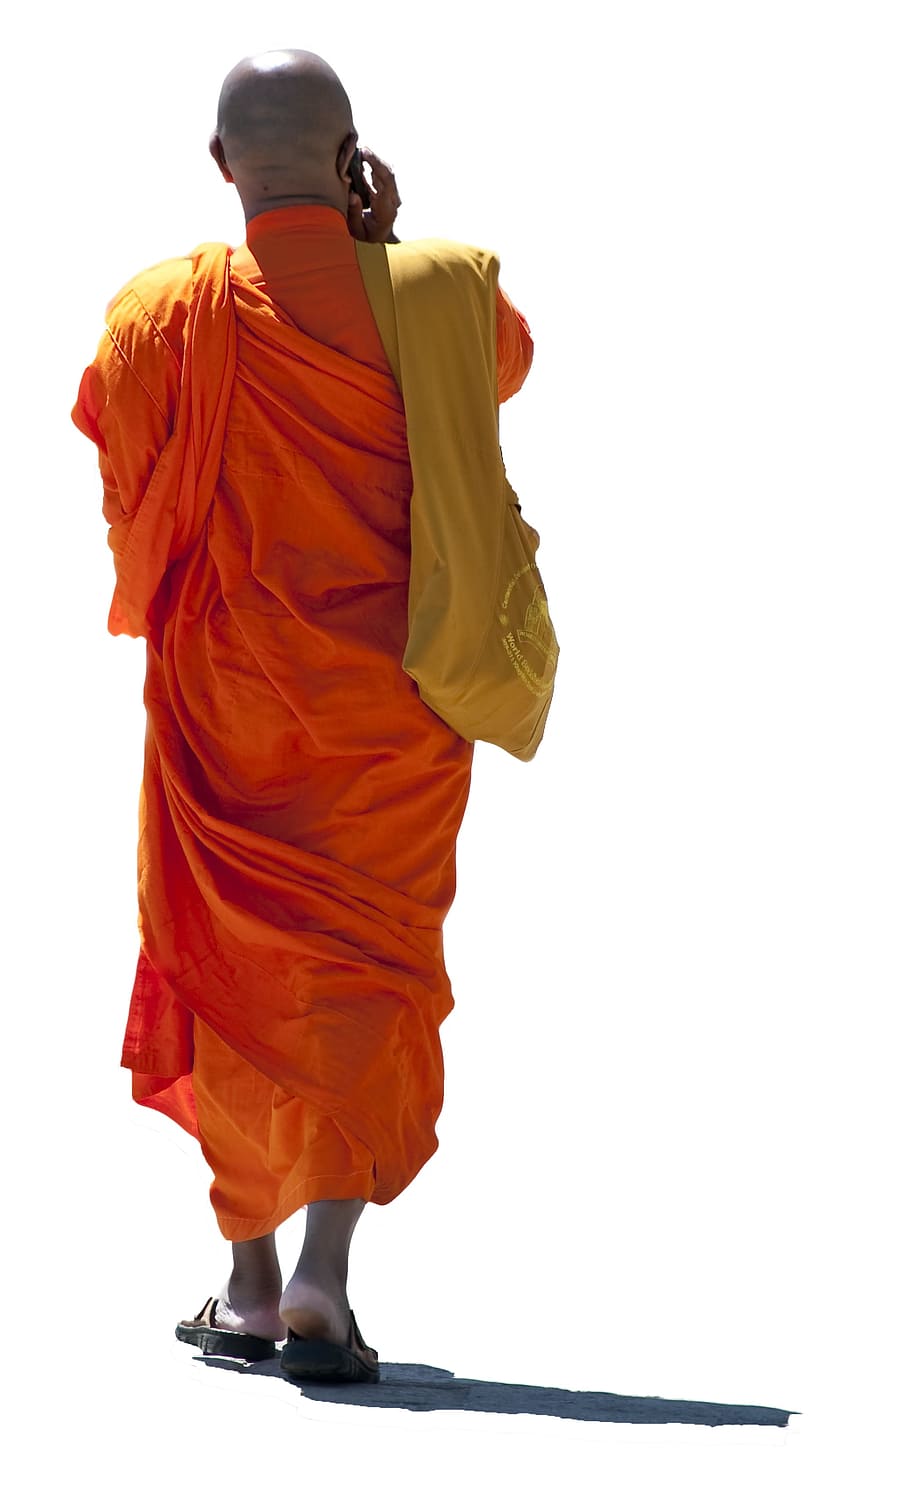 男, 僧侶の服装, 立っている, 閉じる, 写真, 僧侶, 服装, 仏教の僧侶, 携帯電話を話す, 宗教